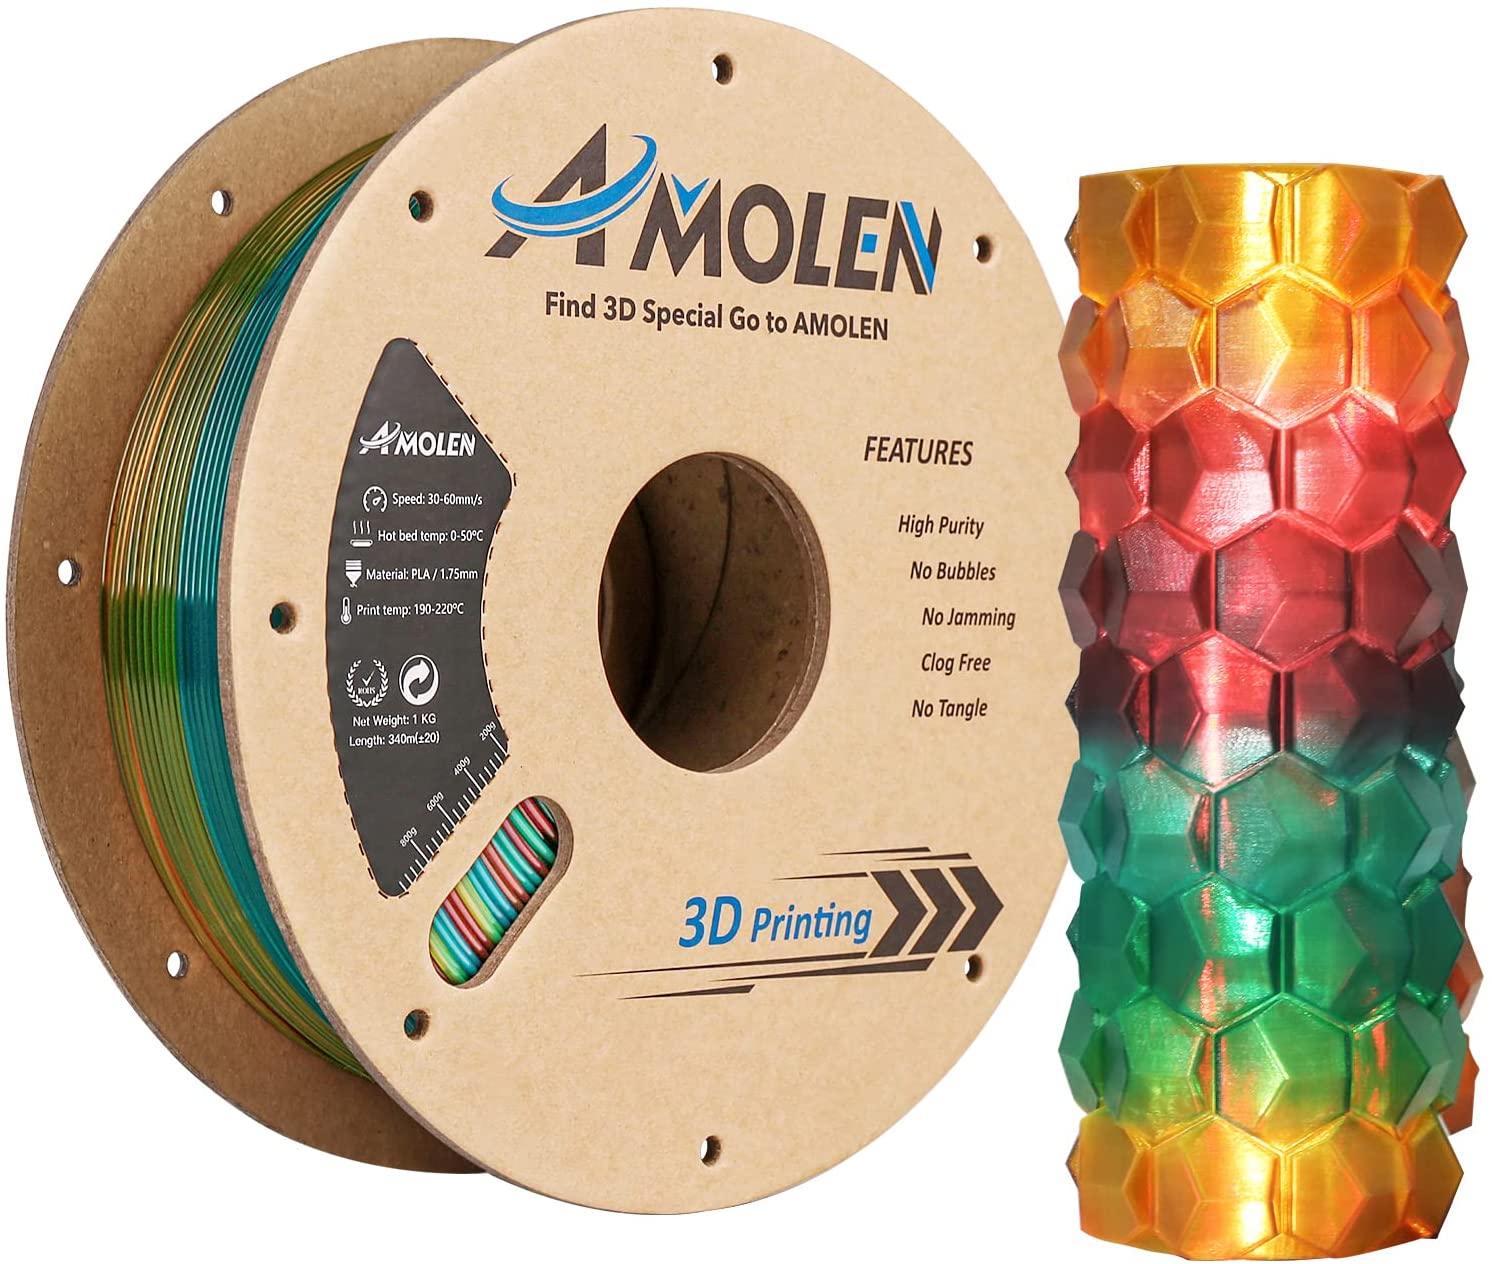 transparent gradient pla filament、3d printer filament、3d printing filament、yellow green red